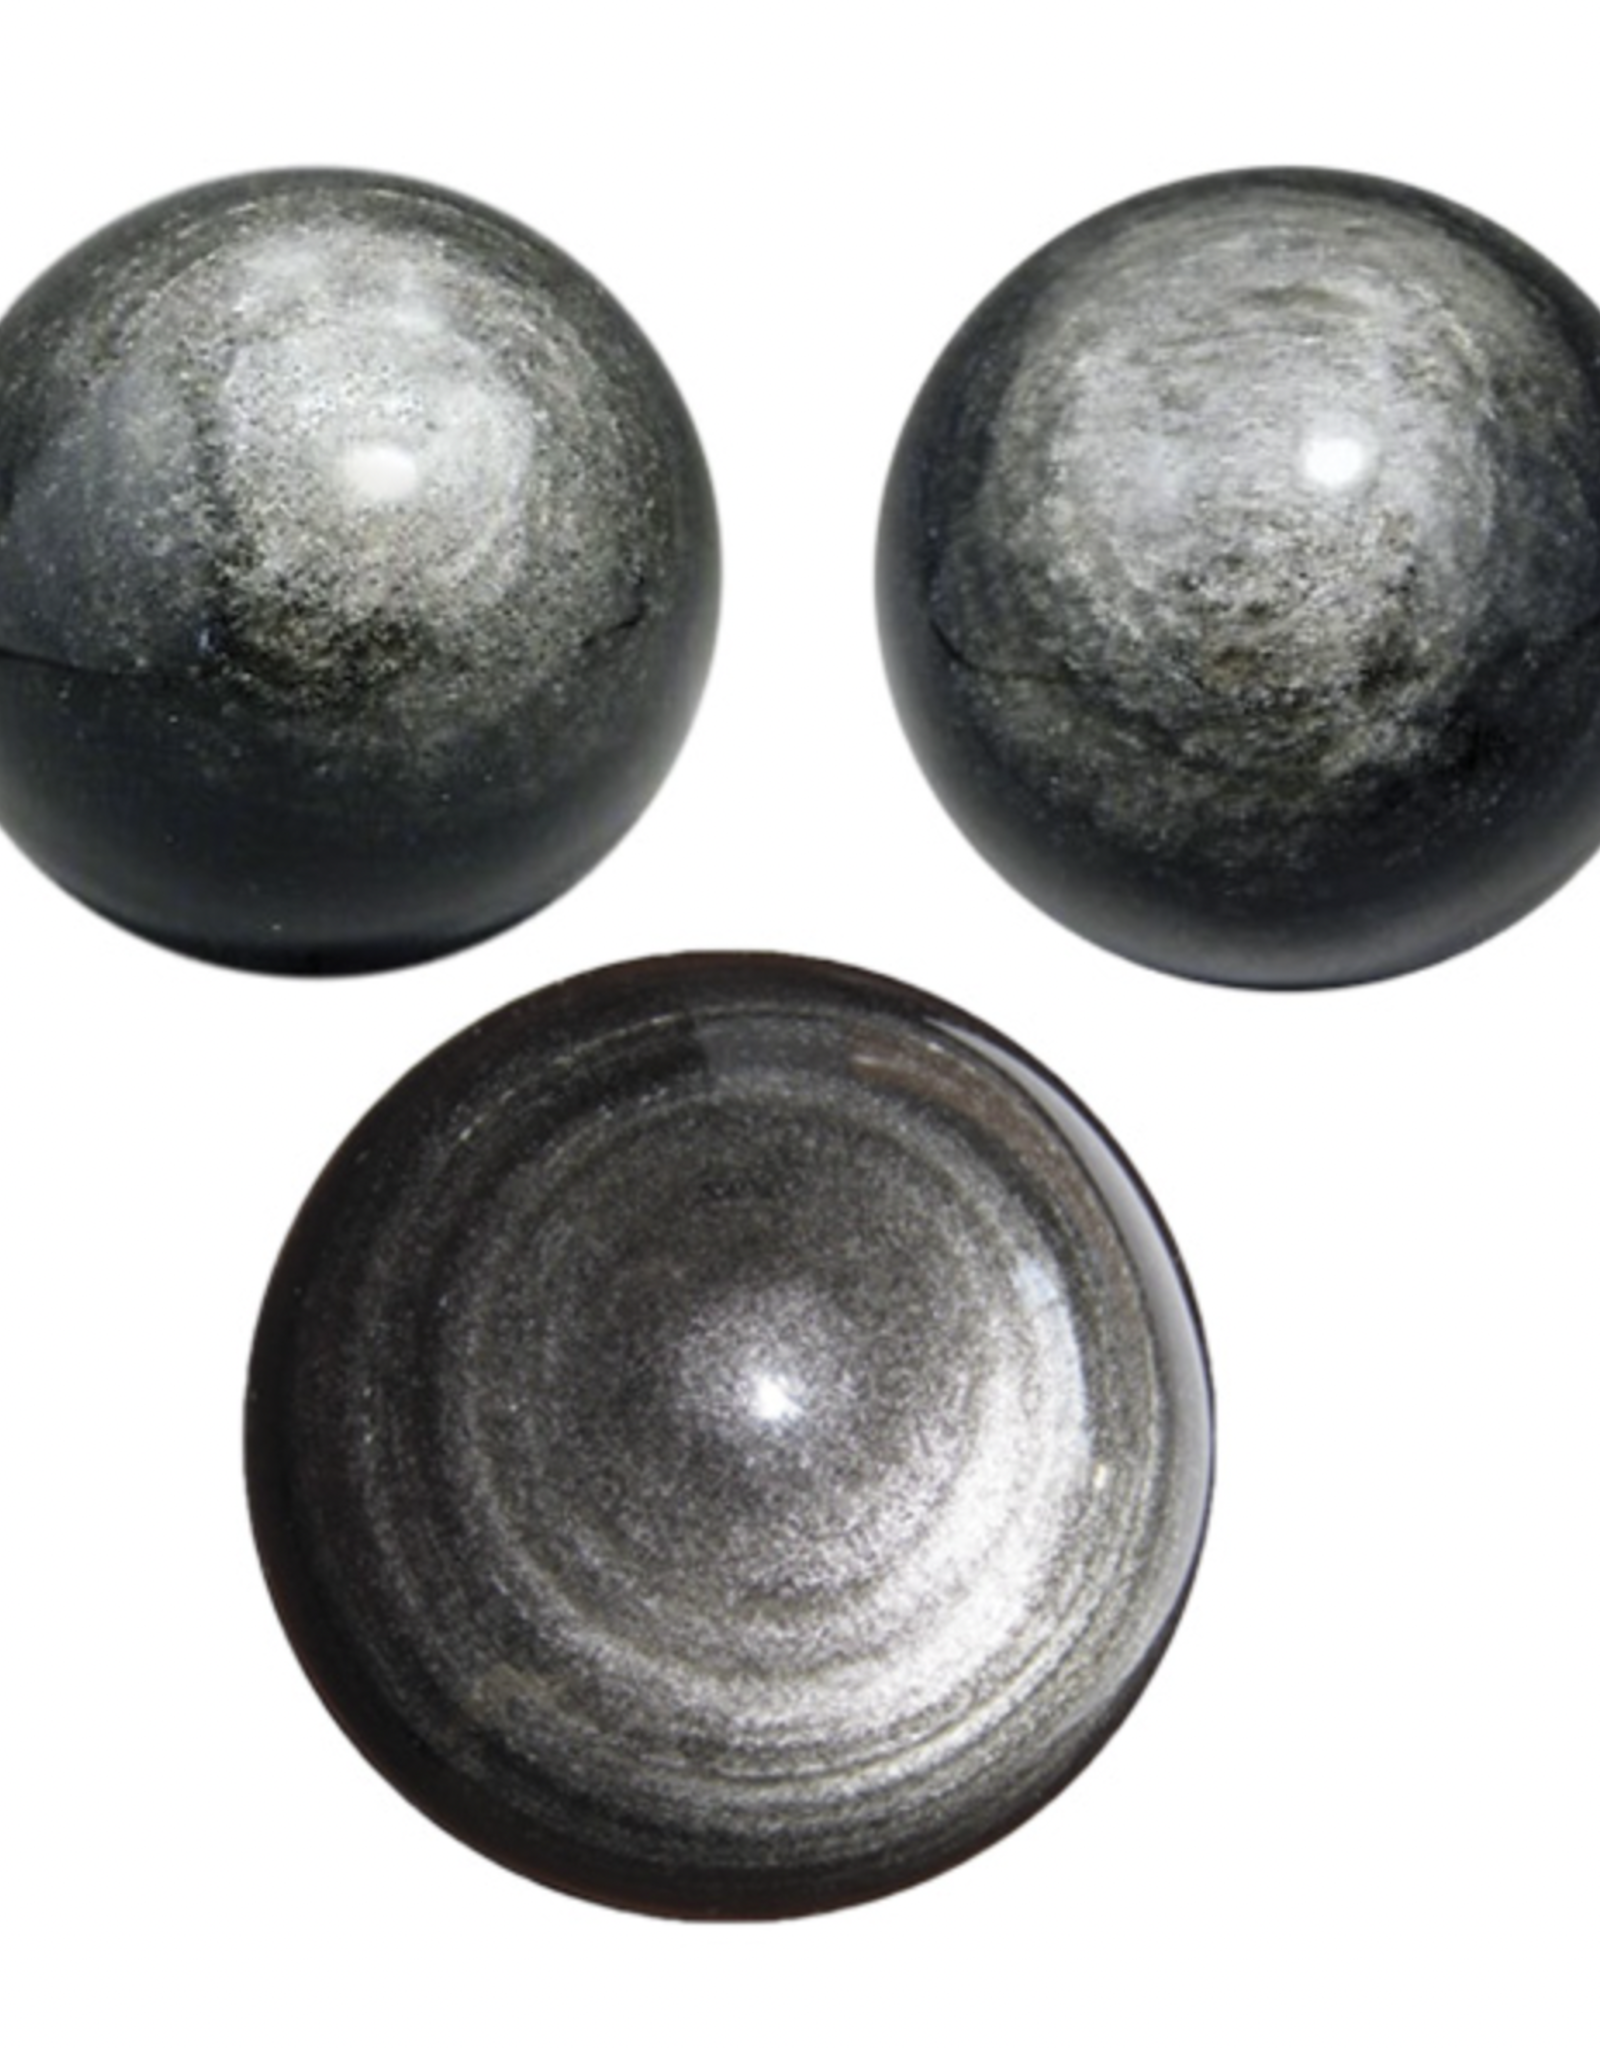 Sphere - Black Obsidian, Silver Sheen (~50-60mm)